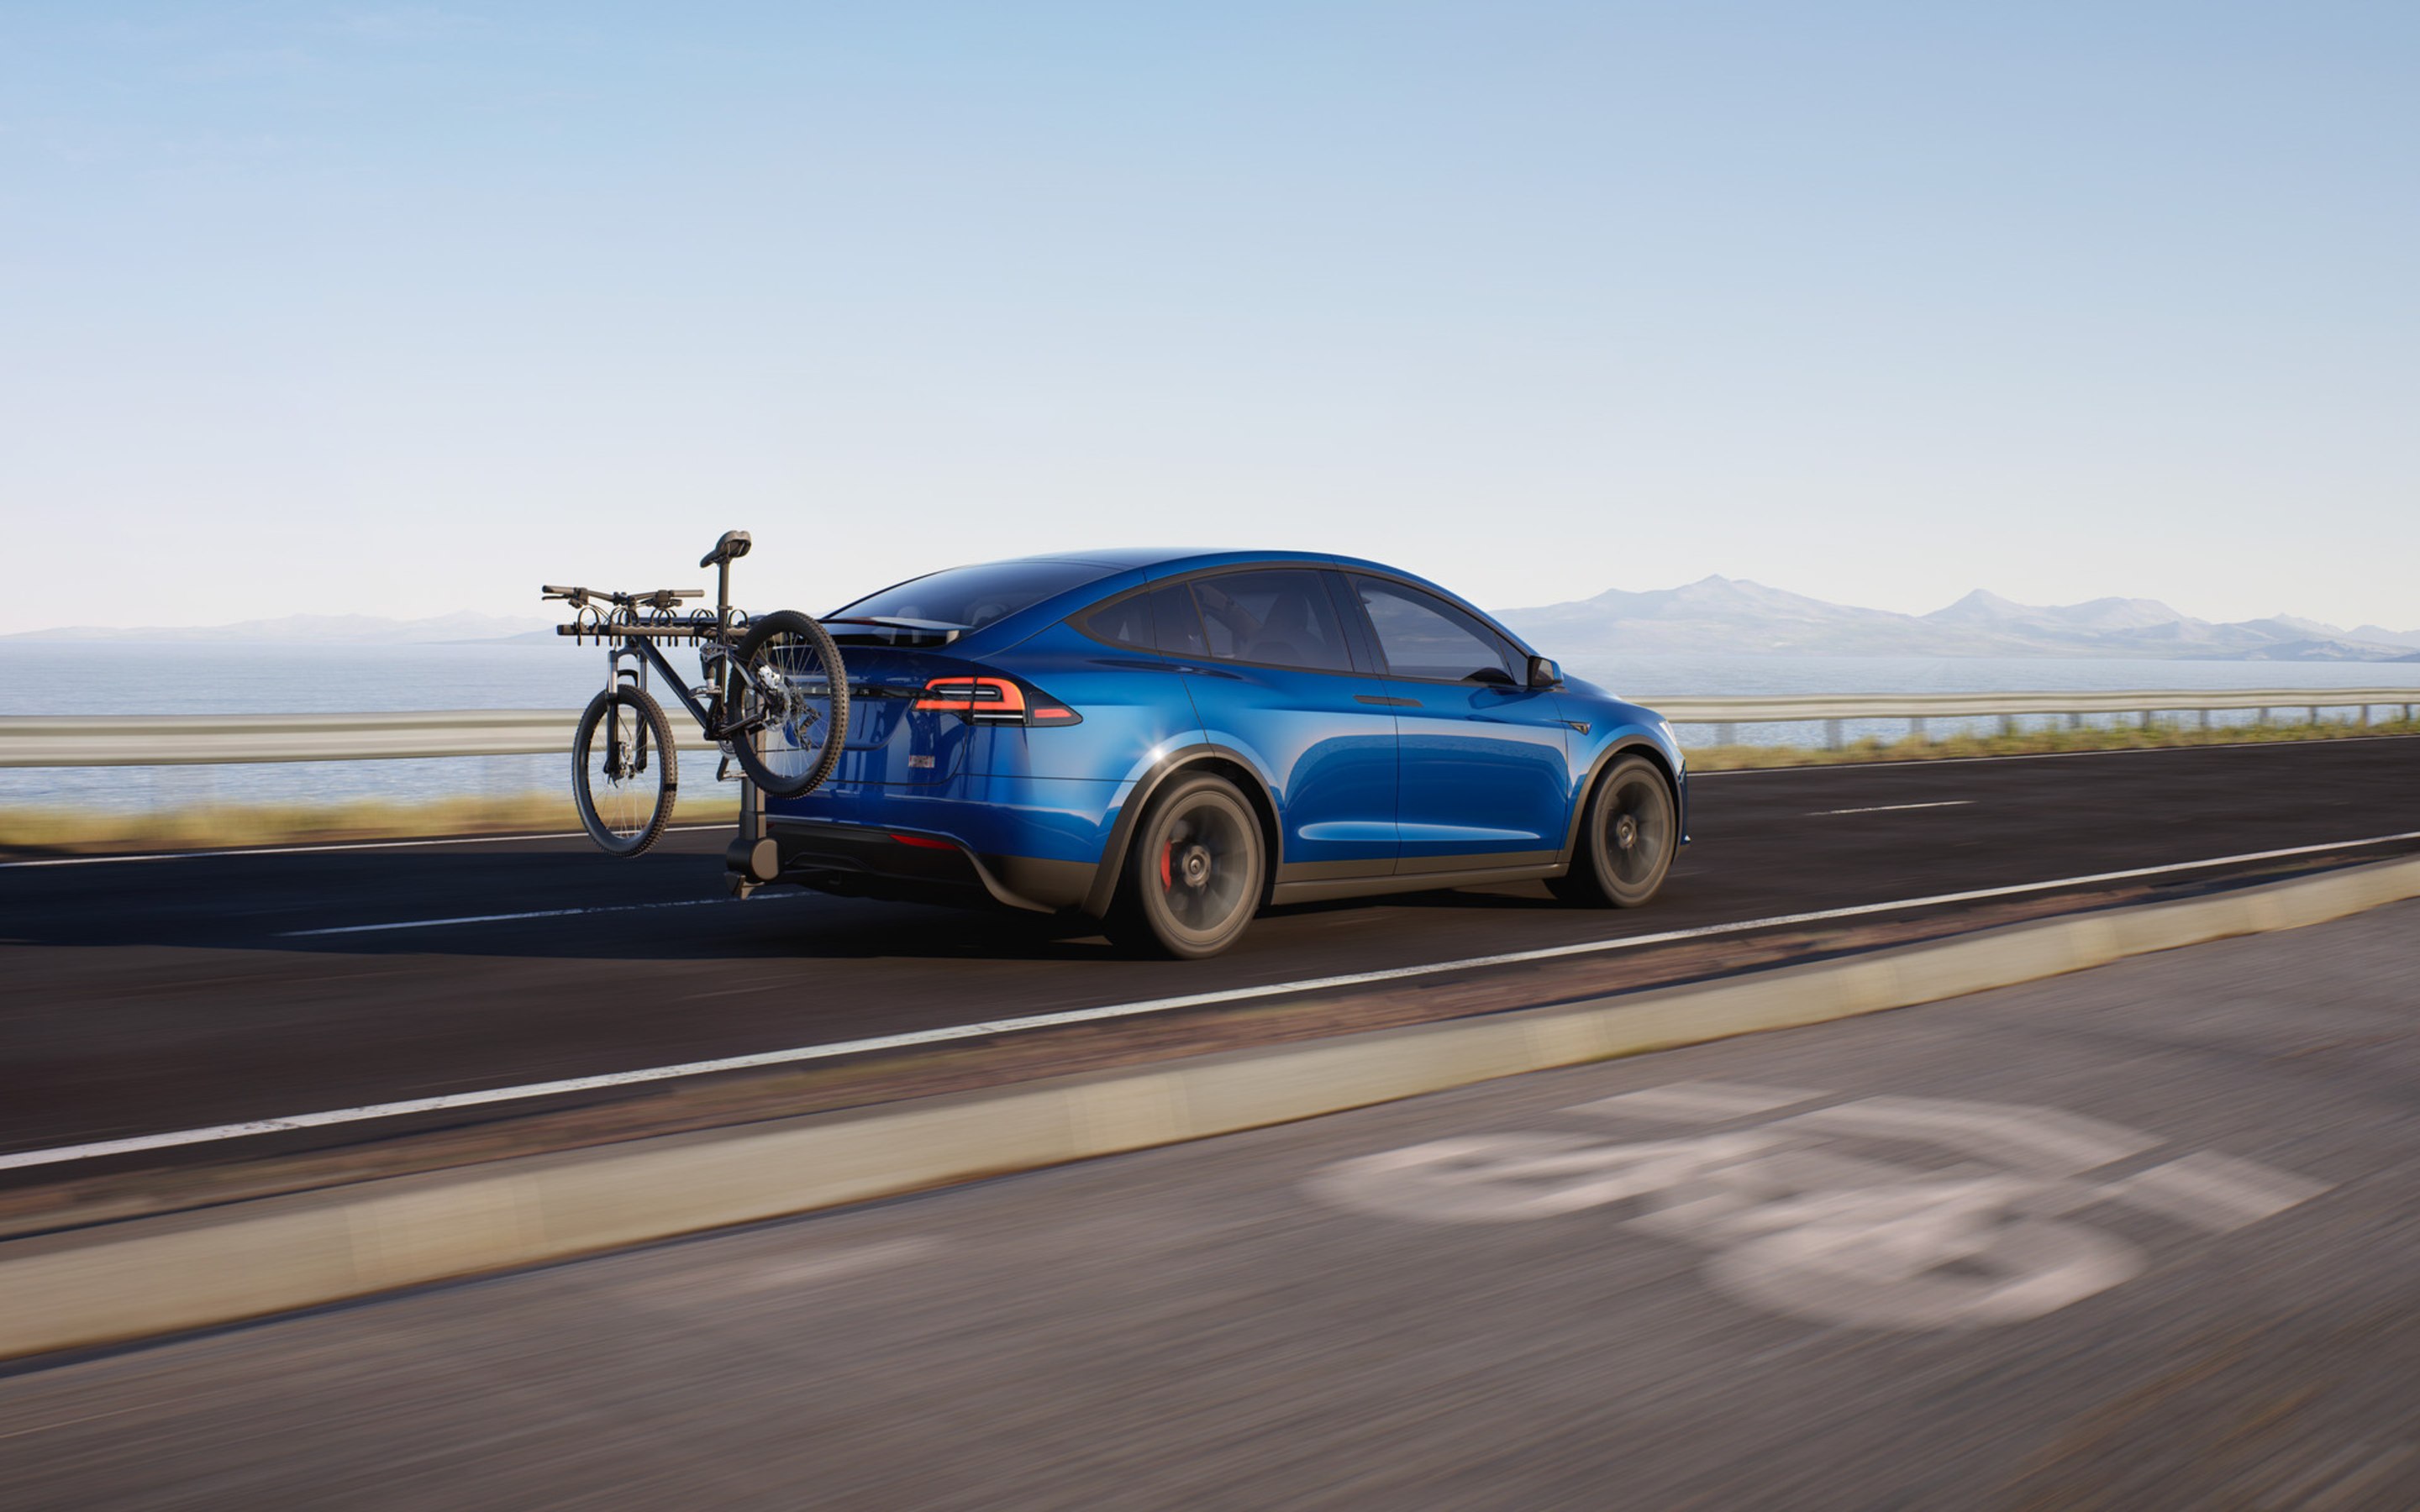 Blå Model X Plaid set bagfra, der kommer kørende på en landevej med en cykel monteret på et cykelstativ